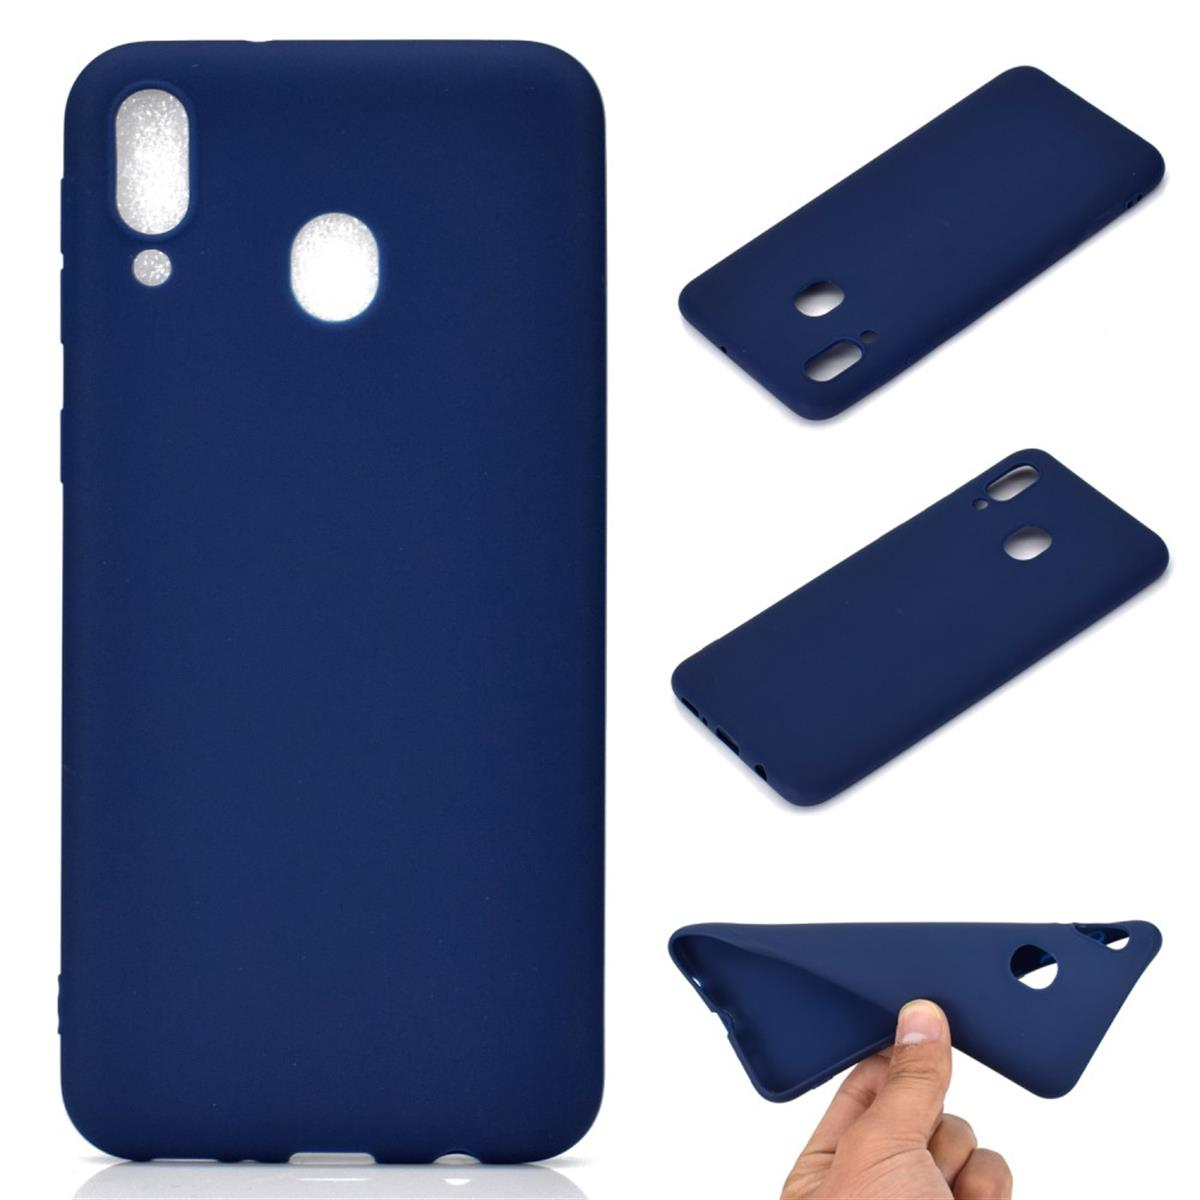 Backcover, A30, Galaxy COVERKINGZ Handycase Samsung, Blau aus Silikon,